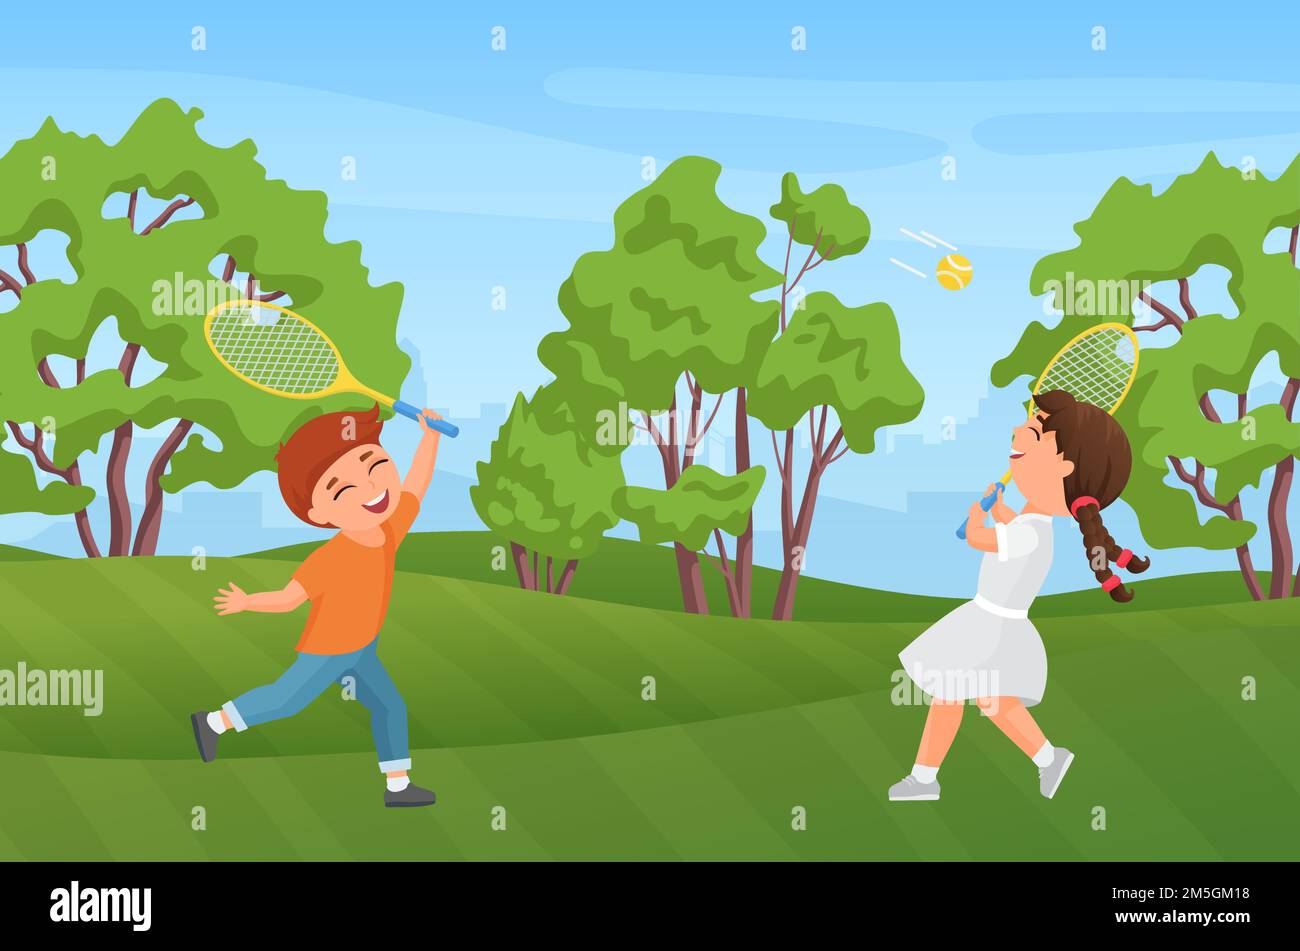 Les enfants heureux jouent au badminton dans le parc d'été illustration vectorielle de paysage.Caricaturie active des personnages de petite fille et de jeune enfant tenant des raquettes, des enfants Illustration de Vecteur